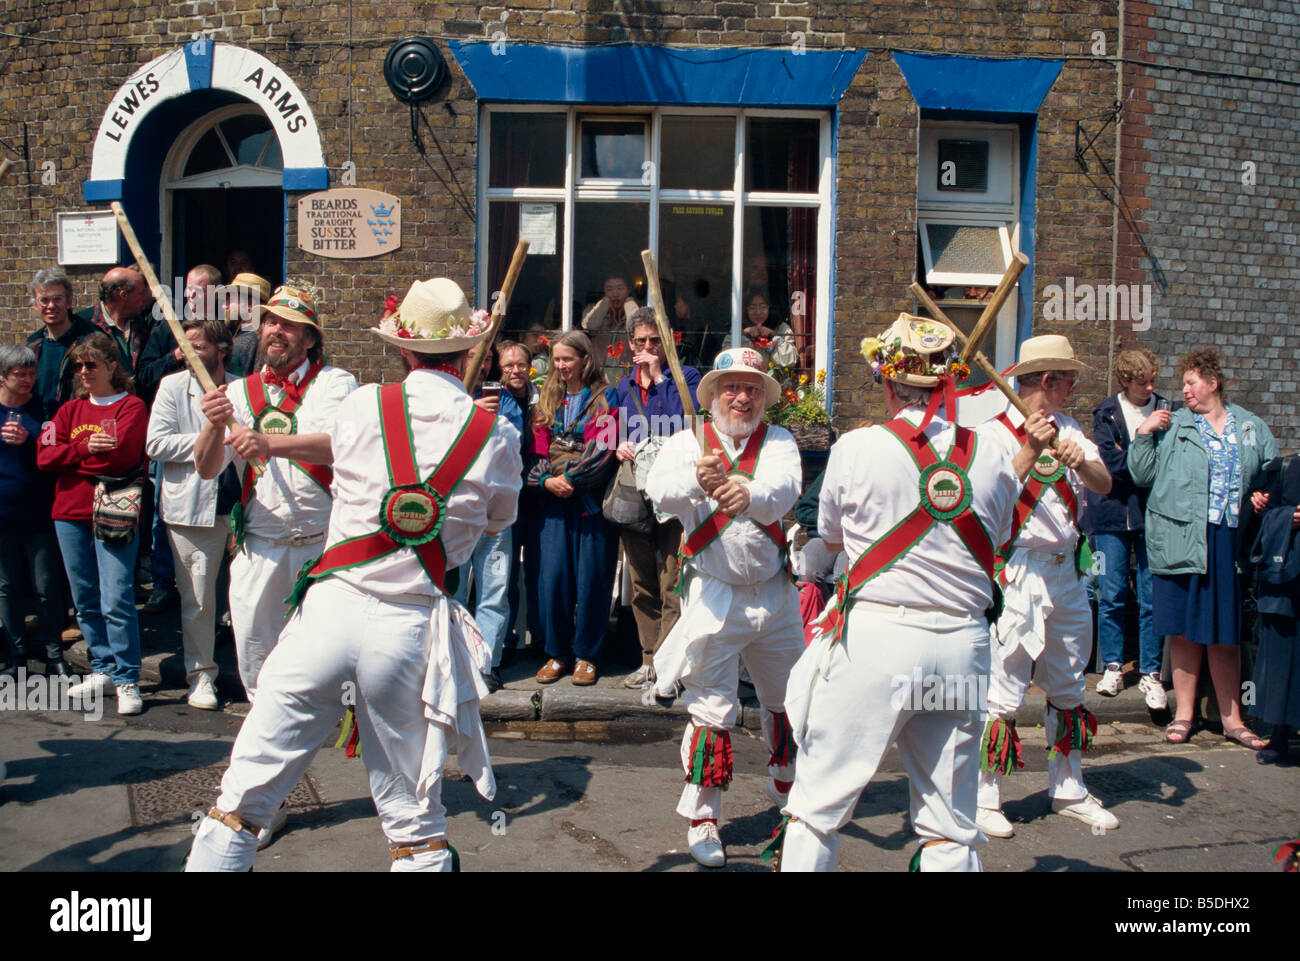 Anello Chanctonbury di Morris ballerini al di fuori del Lewes Arms pub Lewes Sussex England Regno Unito J Pate Foto Stock